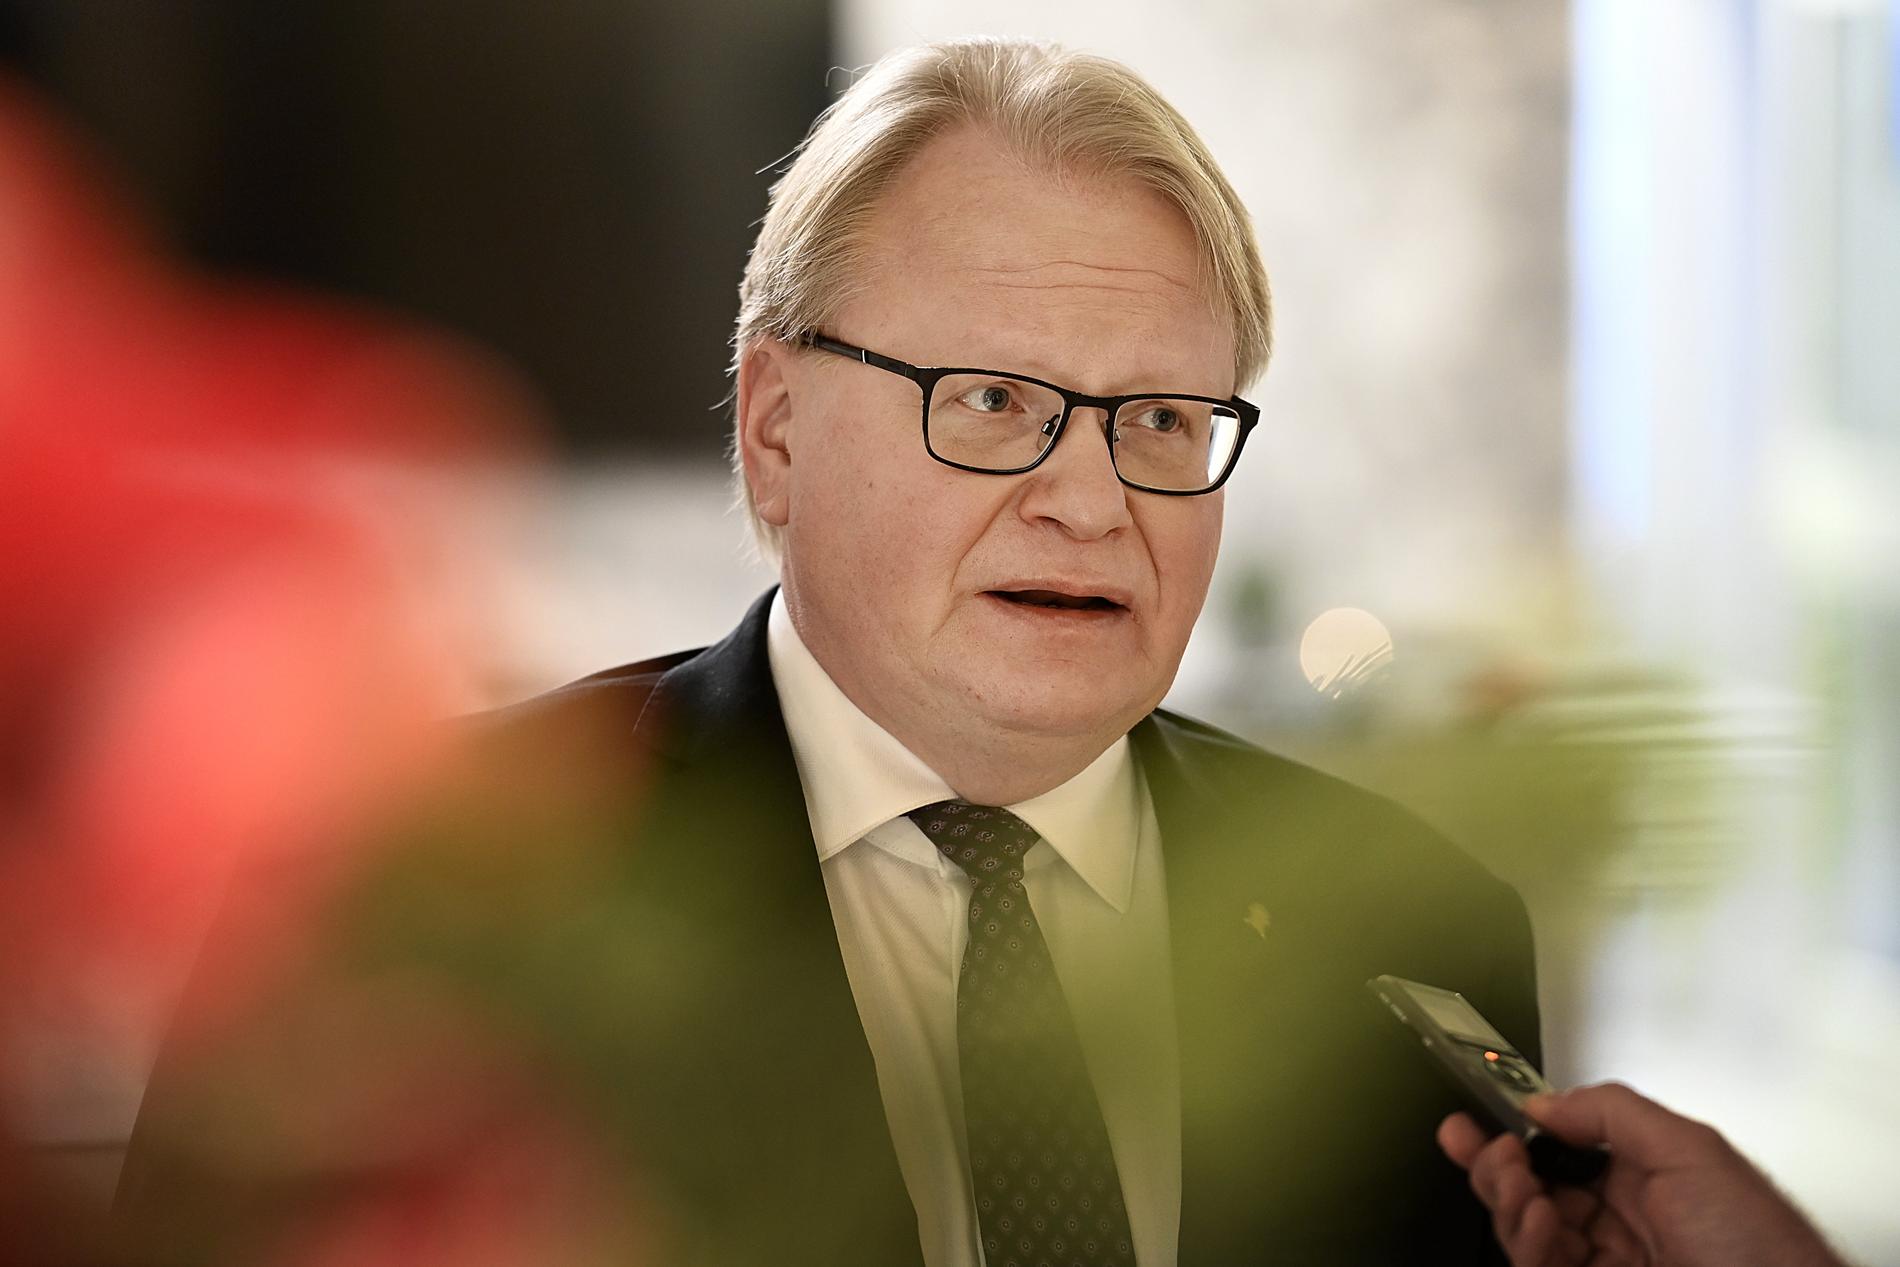 ”Nej, punkt”, svarar Försvarsminister Peter Hultqvist (S) sekreterare på frågan om han vill kommentera situationen. 